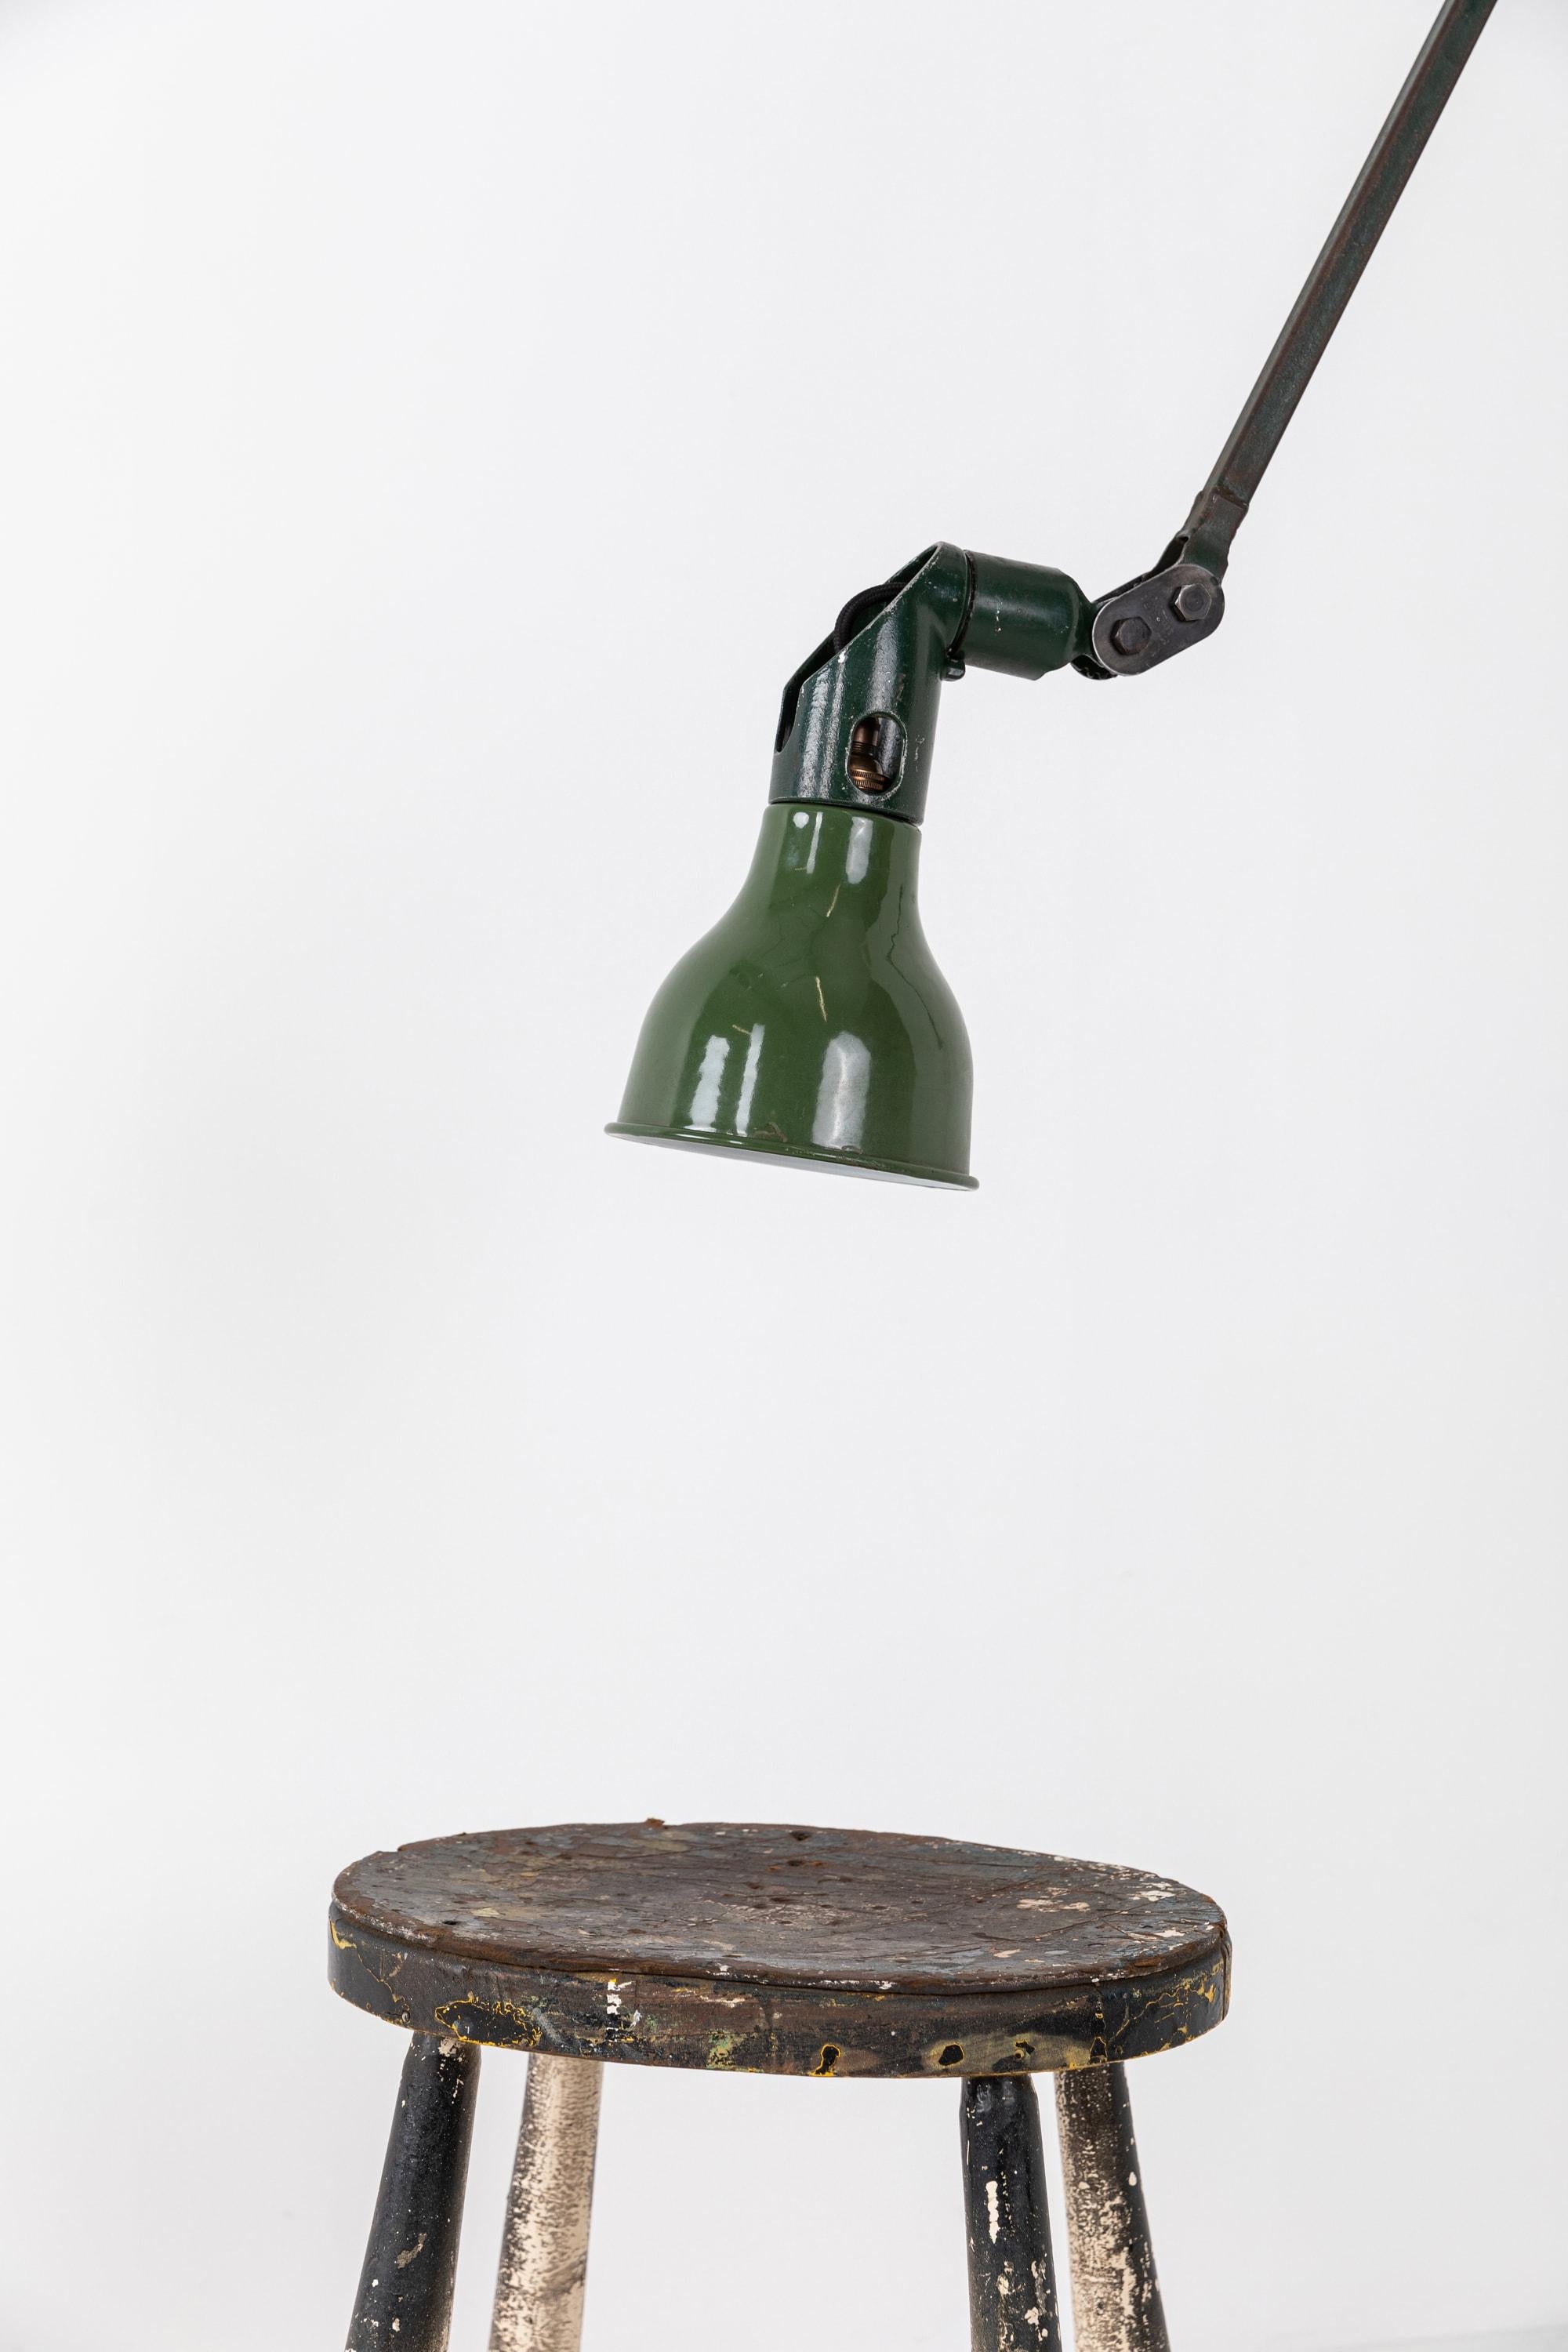 English Large Vintage Industrial Mek-Elek Machinists Adjustable Task Lamp, circa 1930